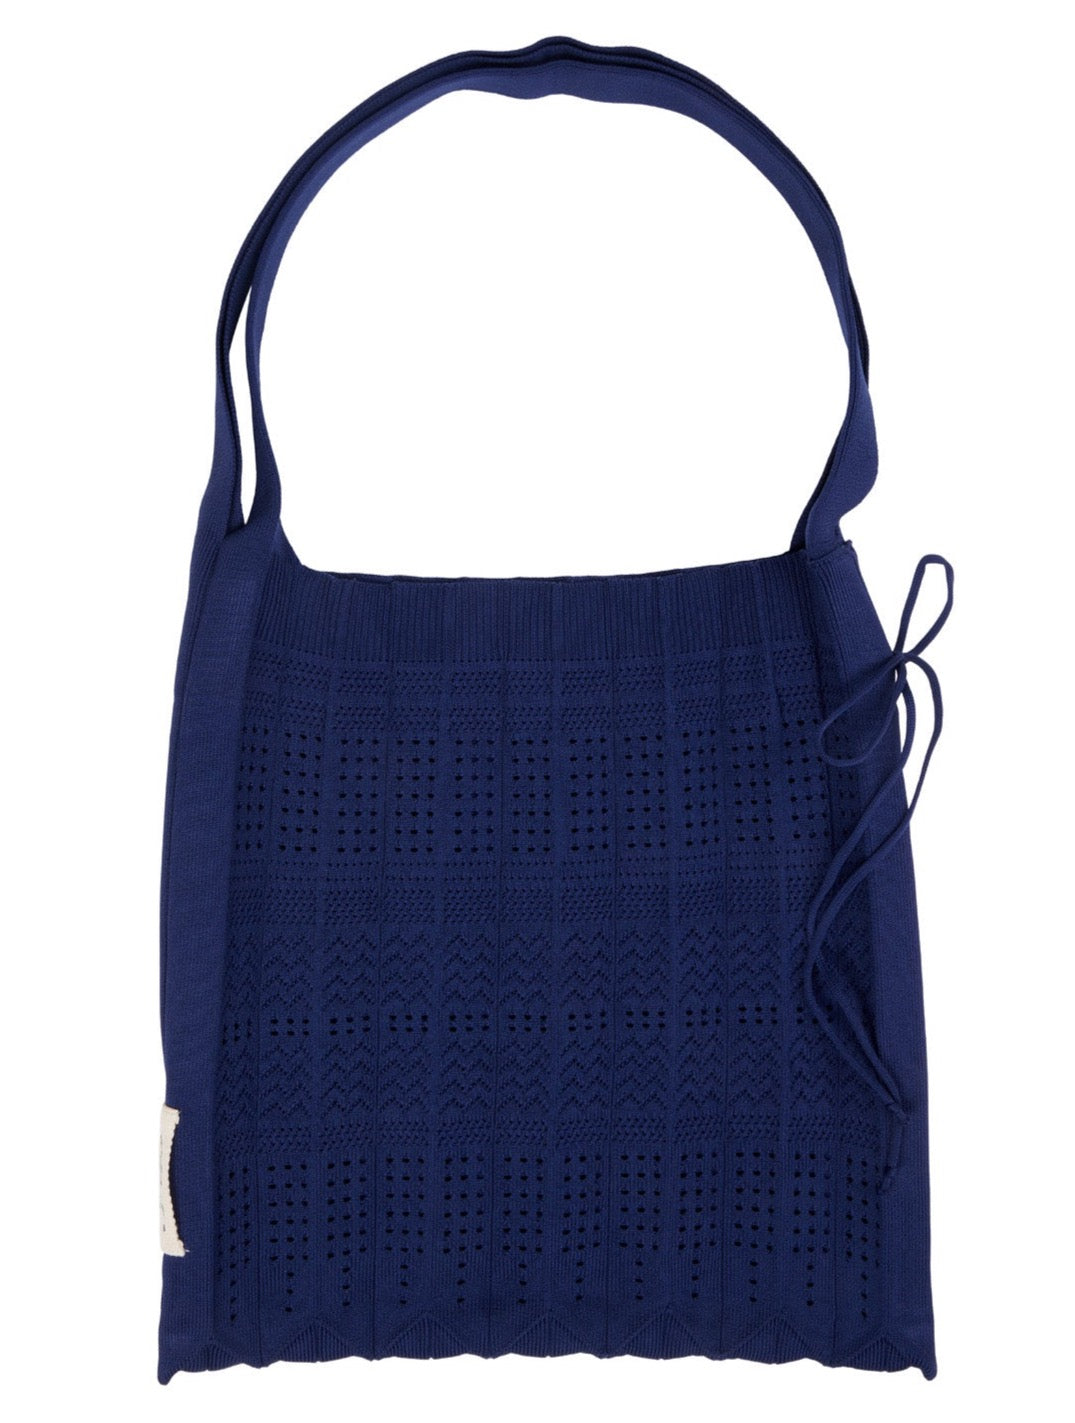 Celine Pico Belt Bag - Size Comparison & Try On - whatveewore | Celine belt  bag, Belt bag, Belt bag outfit